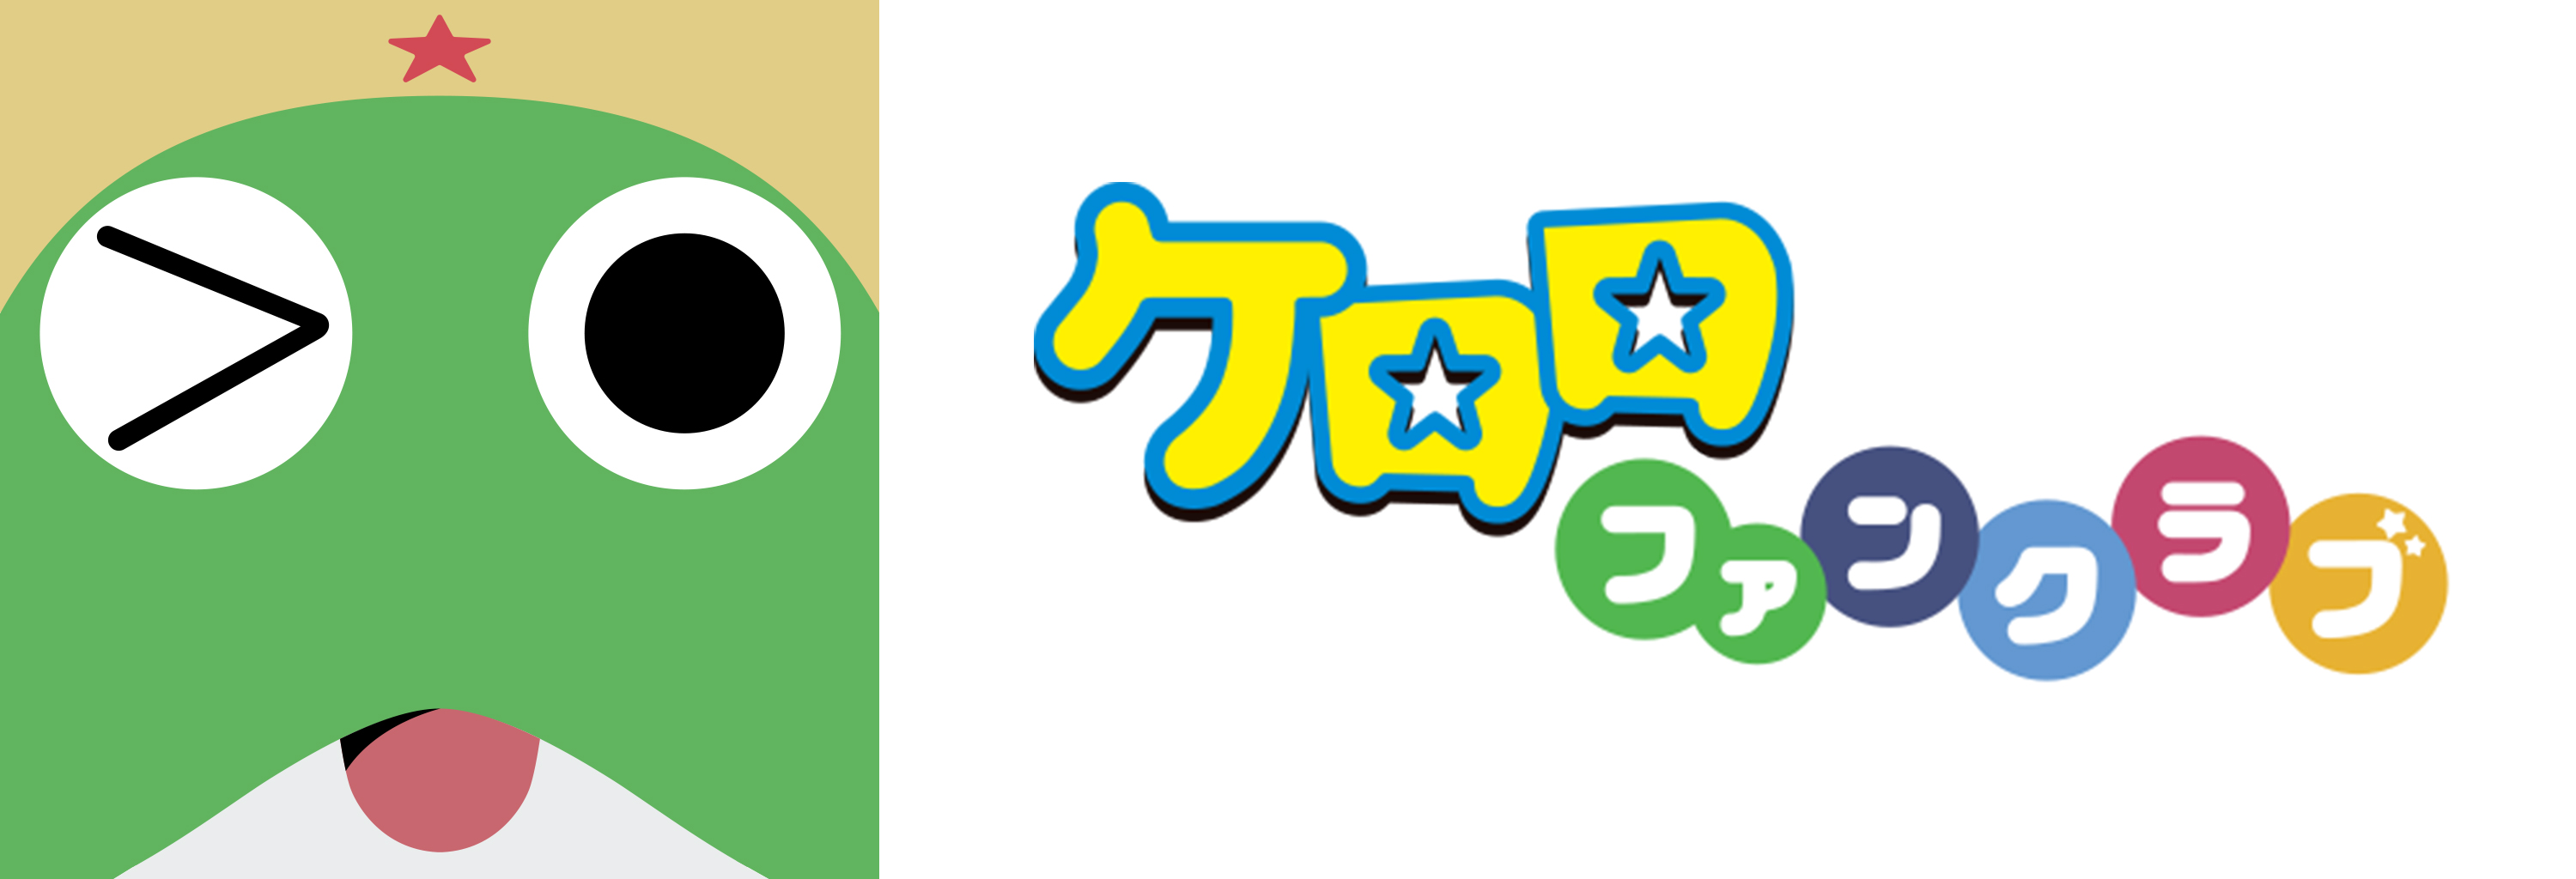 生誕25周年を迎えた人気漫画・アニメ『ケロロ軍曹』オフィシャルファン